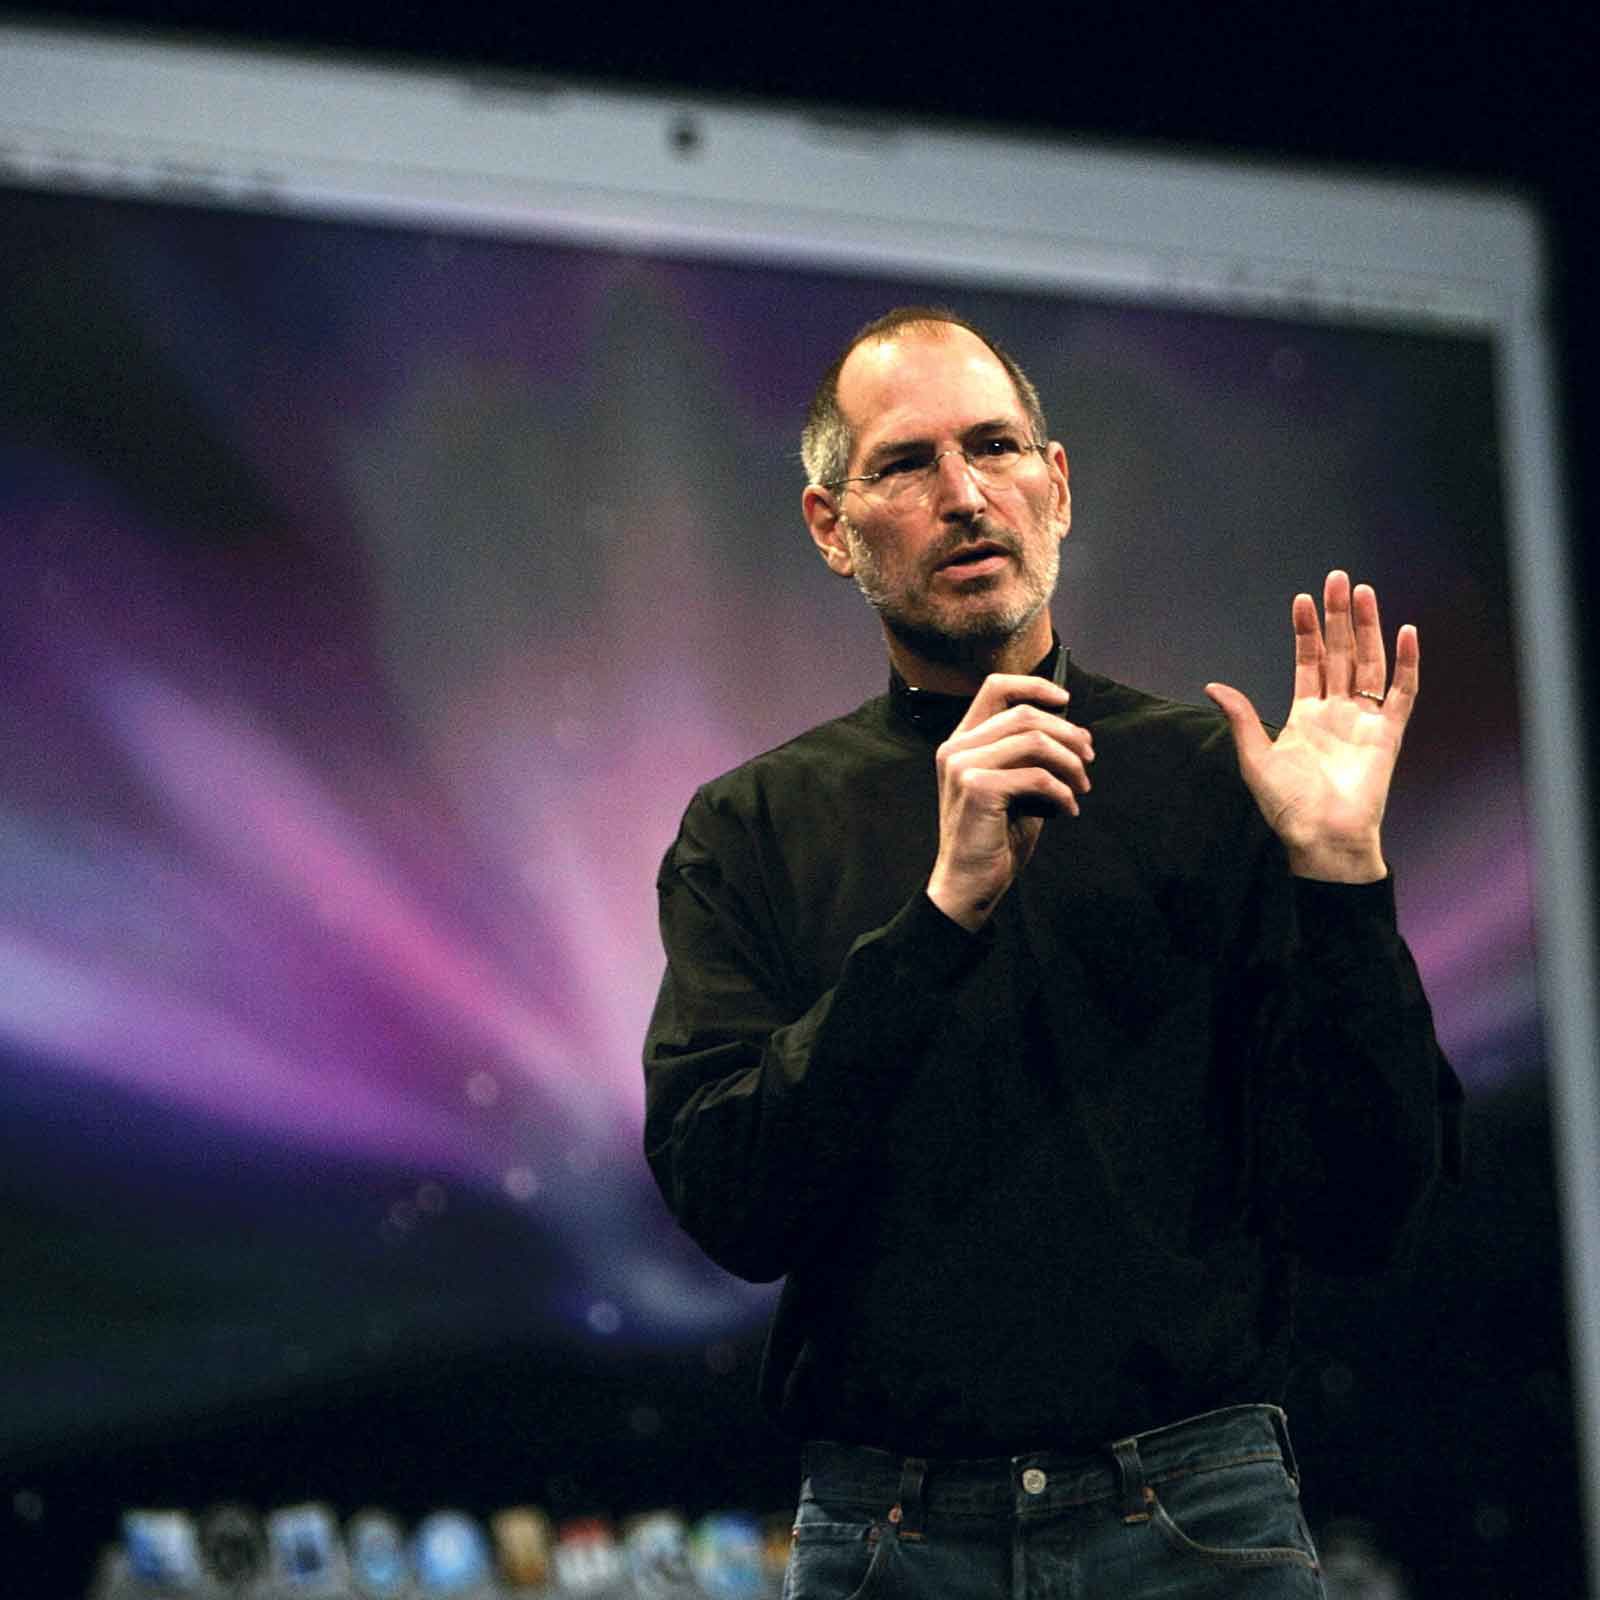 Detail Image Of Steve Jobs Nomer 13